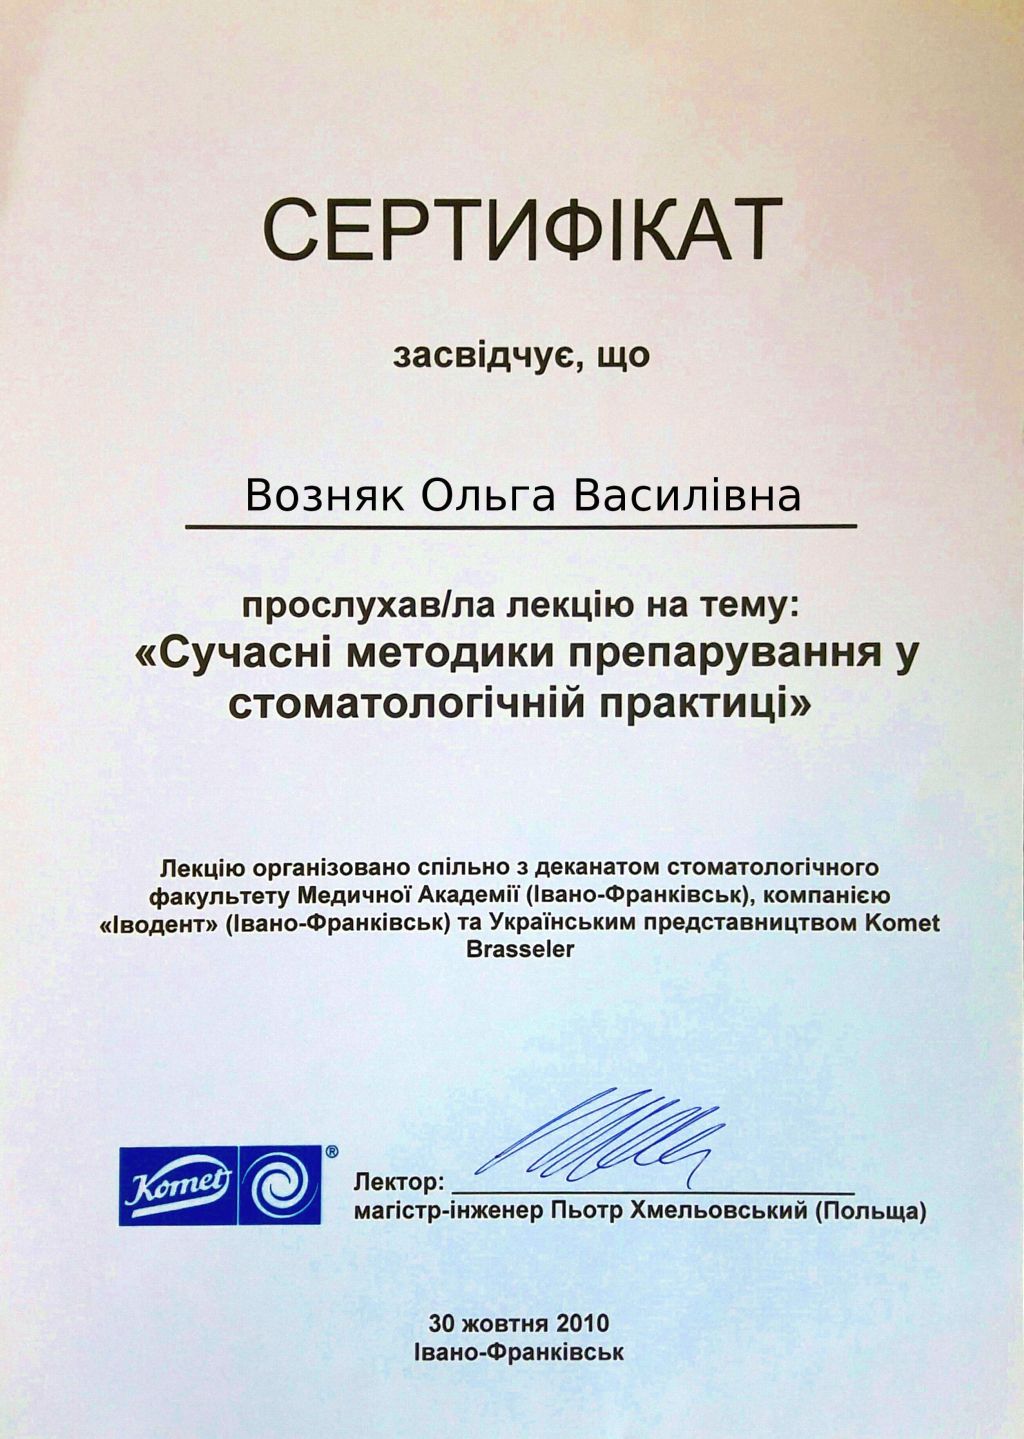 Сертифікат Comet